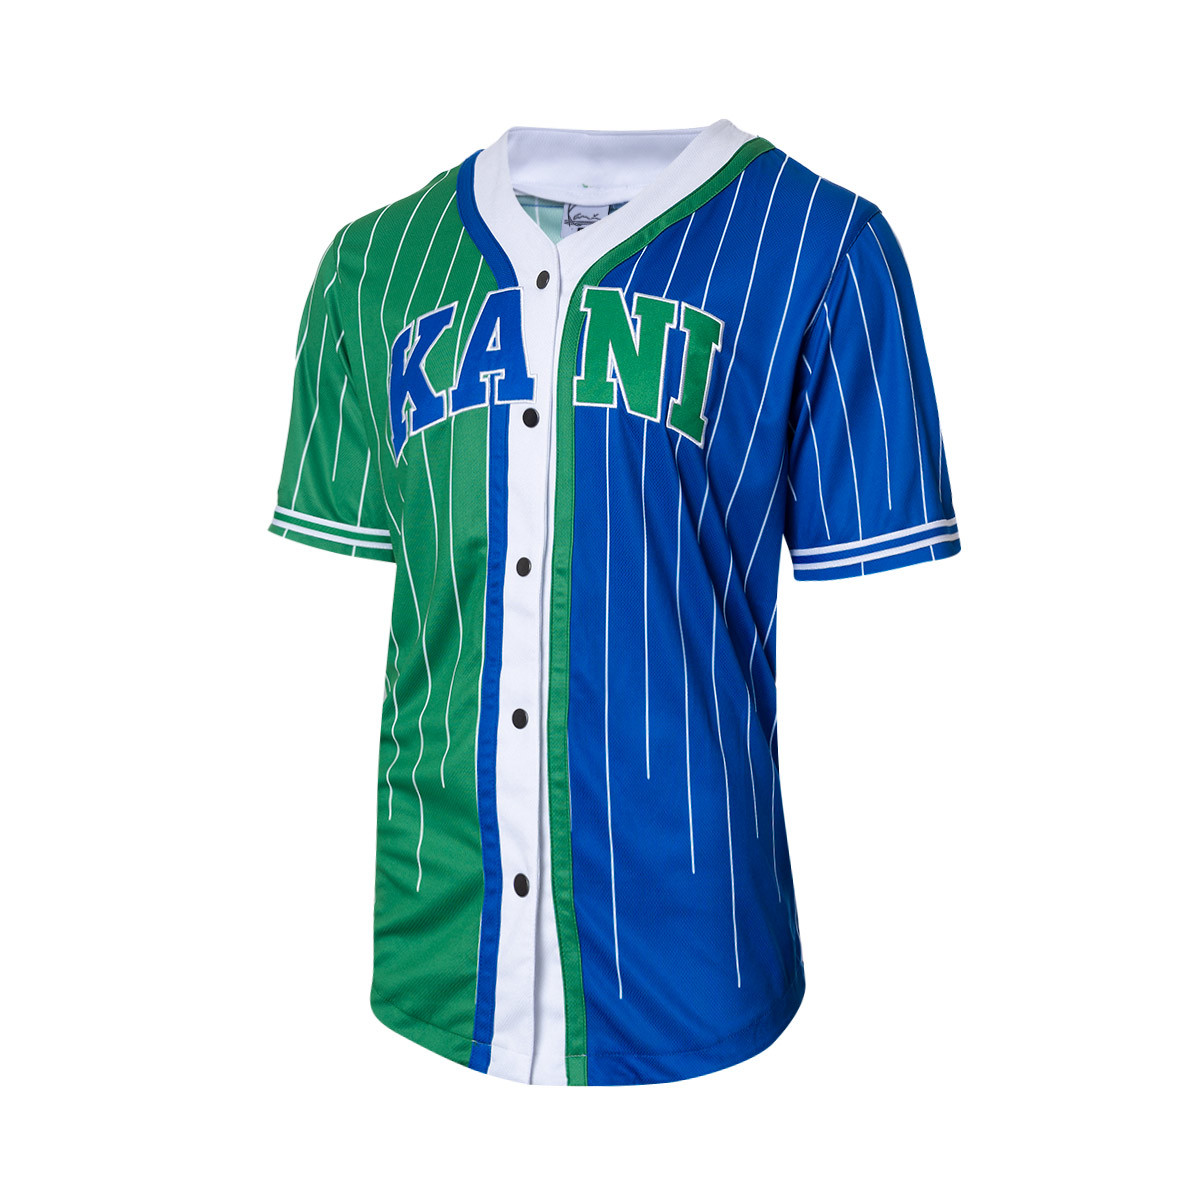 Kani Serif Pinstripe Block Shirt Blue-Green-White Fútbol Emotion